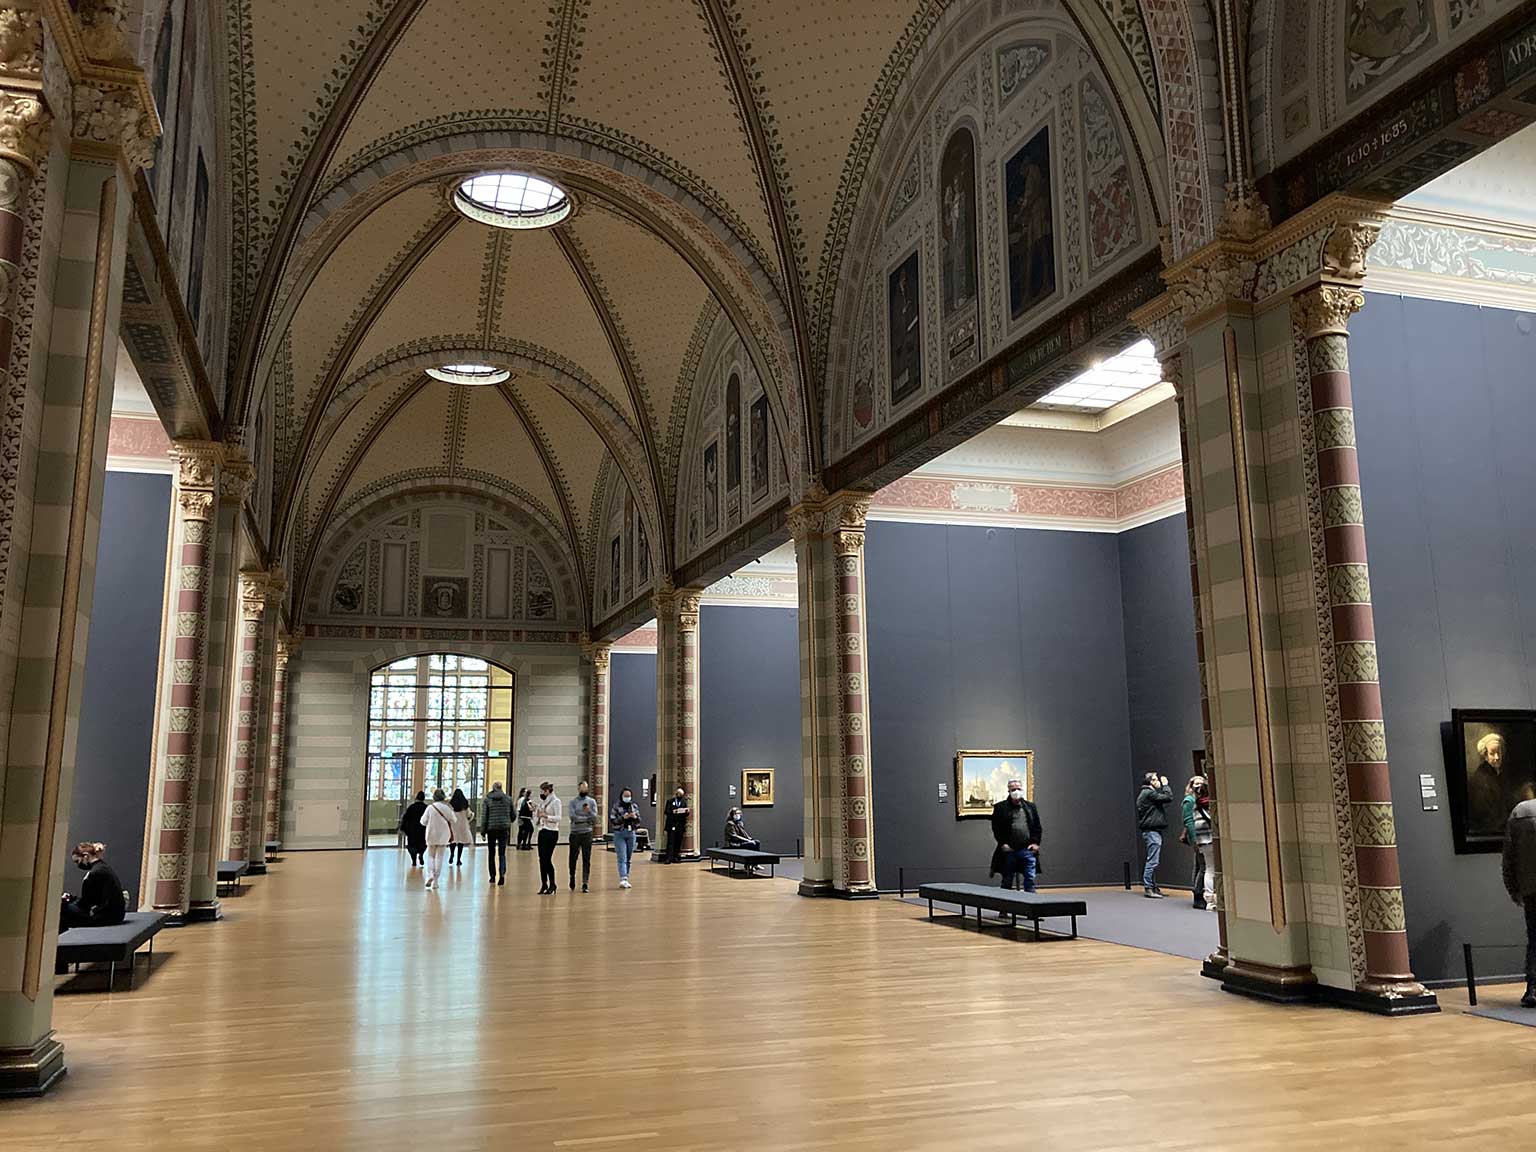 Eregalerij in het Rijksmuseum, Amsterdam, kijkend naar het zuiden